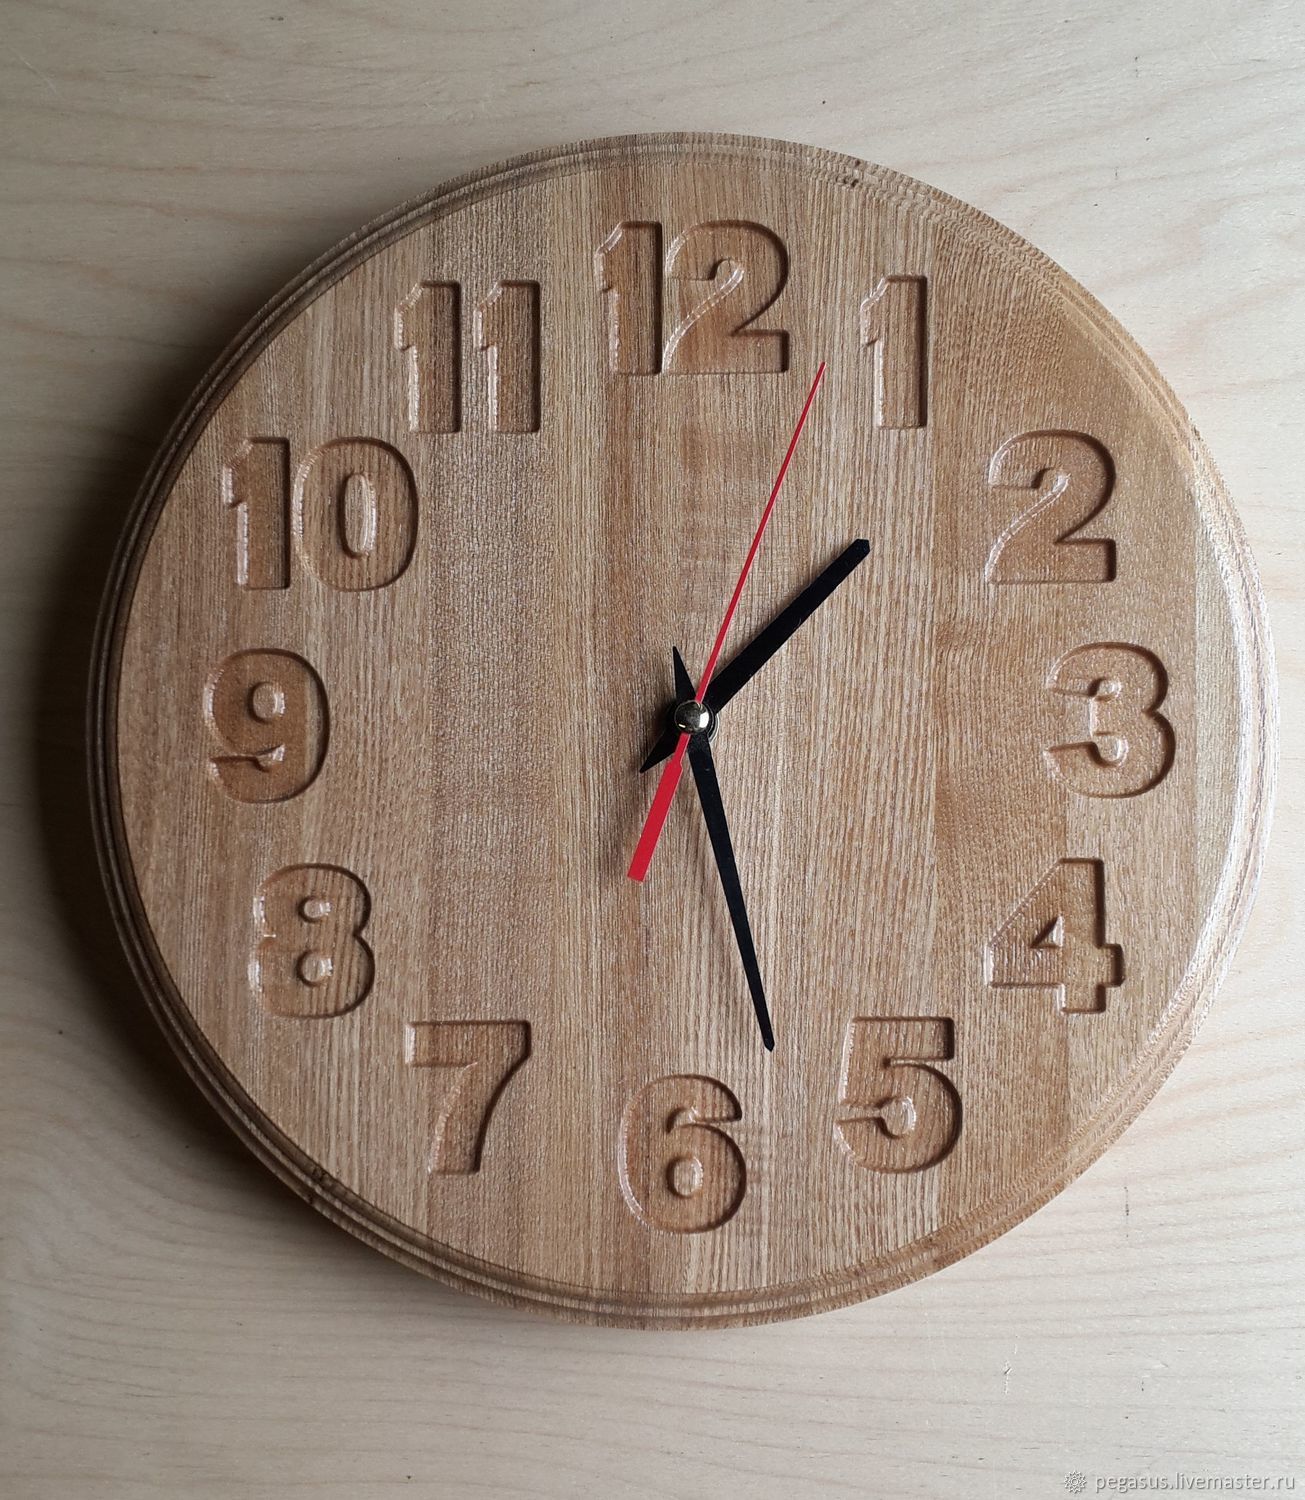 Причины настенных часов. Оригинальные настенные часы. Часы из дерева. Деревянные часы на стену. Часы настенные деревянные.